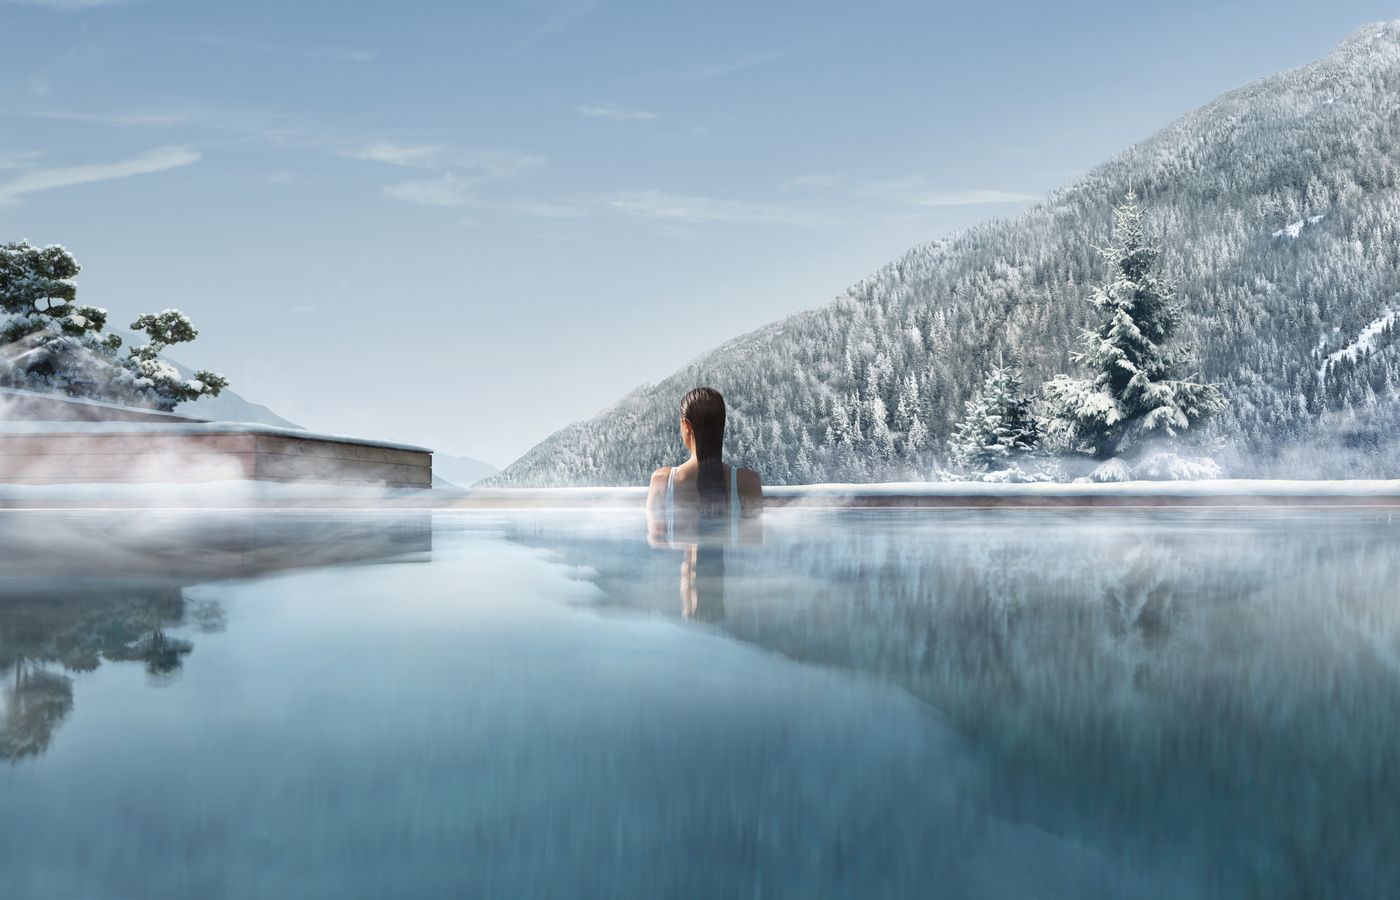 Trip Ferienwohnung - FitReisen - Lefay Resort & Spa Dolomiti in Pinzolo buche jetzt Deinen Wellness & Beauty Urlaub im Lefay Resort & Spa Dolomiti in der Region Südtirol, in Italien günstig bei uns!